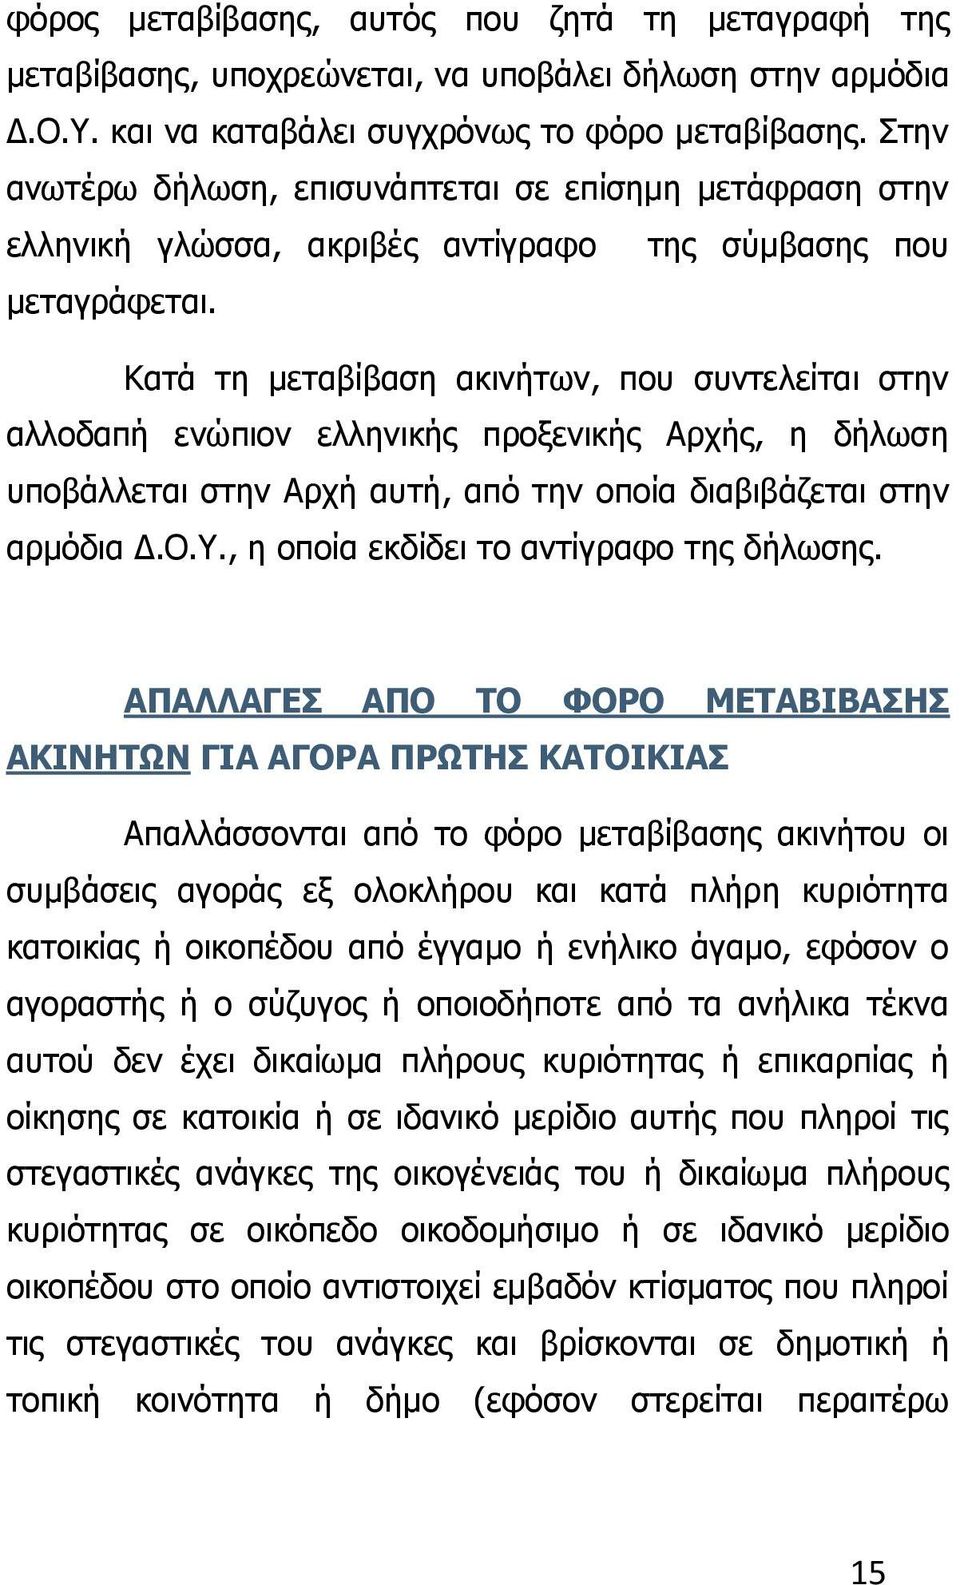 Κατά τη μεταβίβαση ακινήτων, που συντελείται στην αλλοδαπή ενώπιον ελληνικής προξενικής Αρχής, η δήλωση υποβάλλεται στην Αρχή αυτή, από την οποία διαβιβάζεται στην αρμόδια Δ.Ο.Υ.